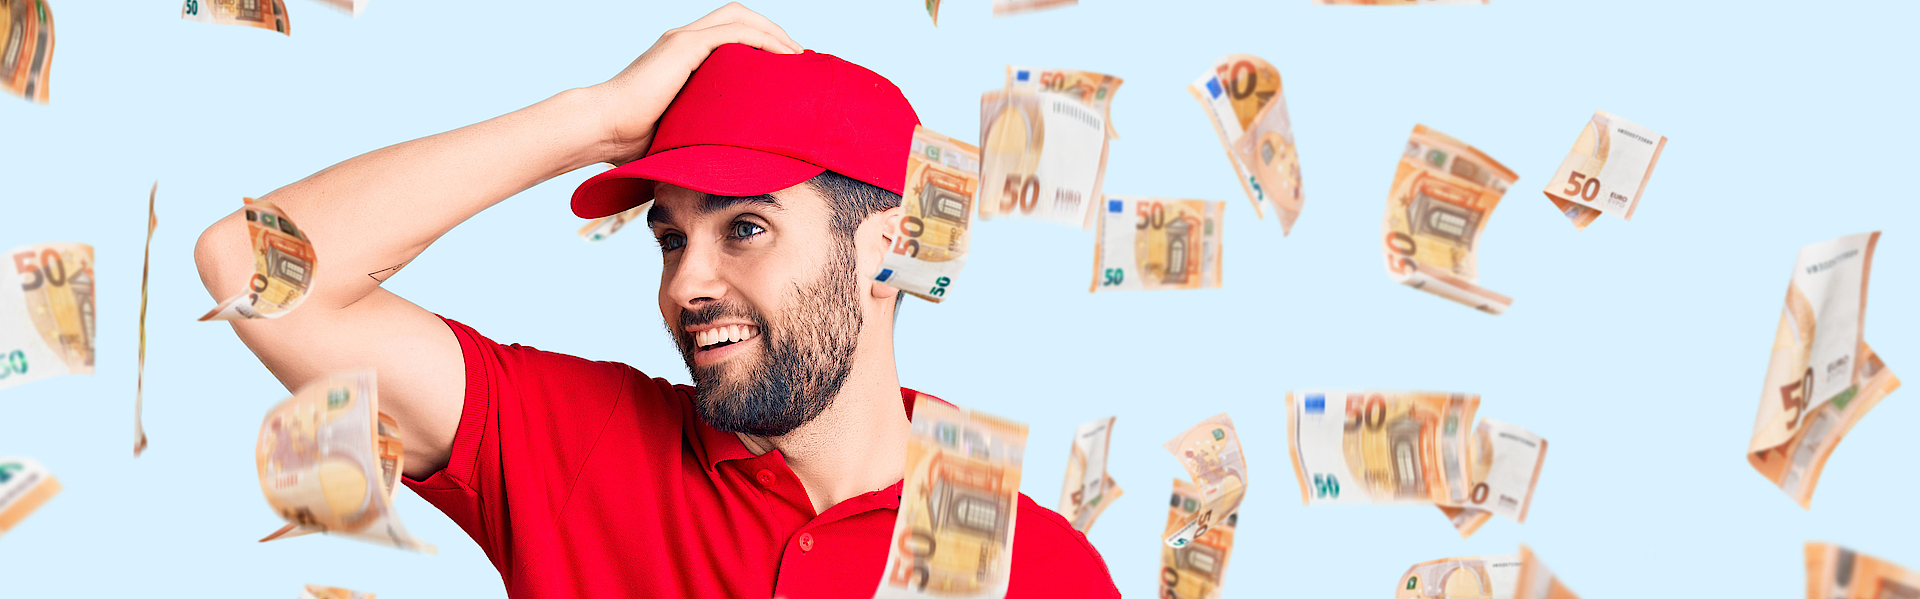 Ein junger Mann in der Uniform eines Lieferantenmit Baseball-Kappe freut sich über Geldsegen. Die Scheine fliegen um ihn herum.